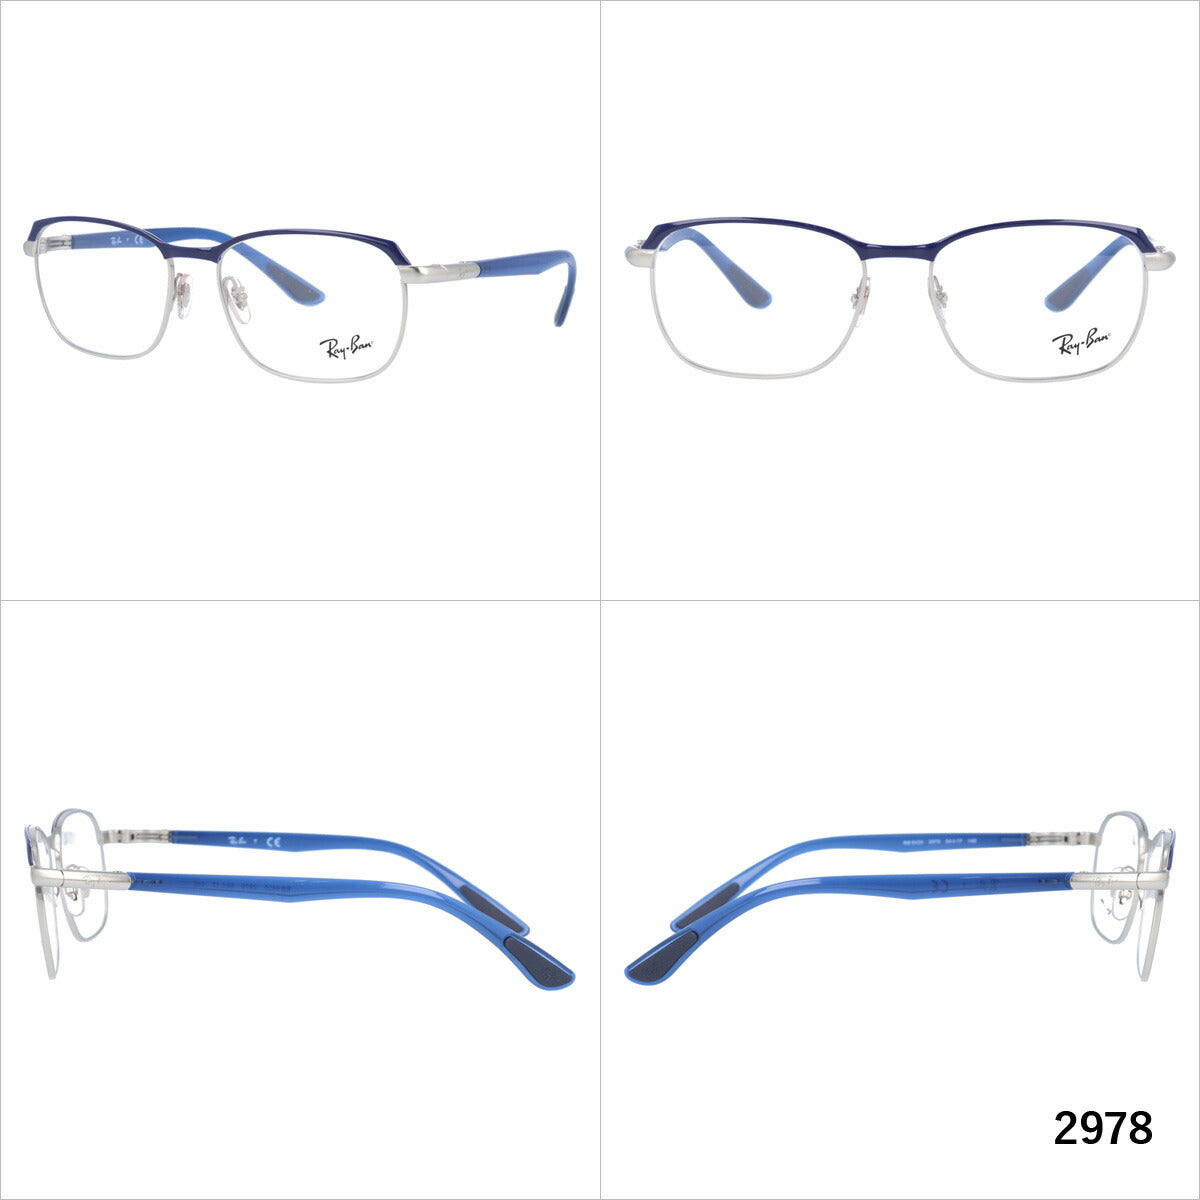 レイバン メガネ フレーム RX6420 2978・2976 54 スクエア型 メンズ レディース 眼鏡 度付き 度なし 伊達メガネ ブランドメガネ 紫外線 ブルーライトカット 老眼鏡 花粉対策 Ray-Ban